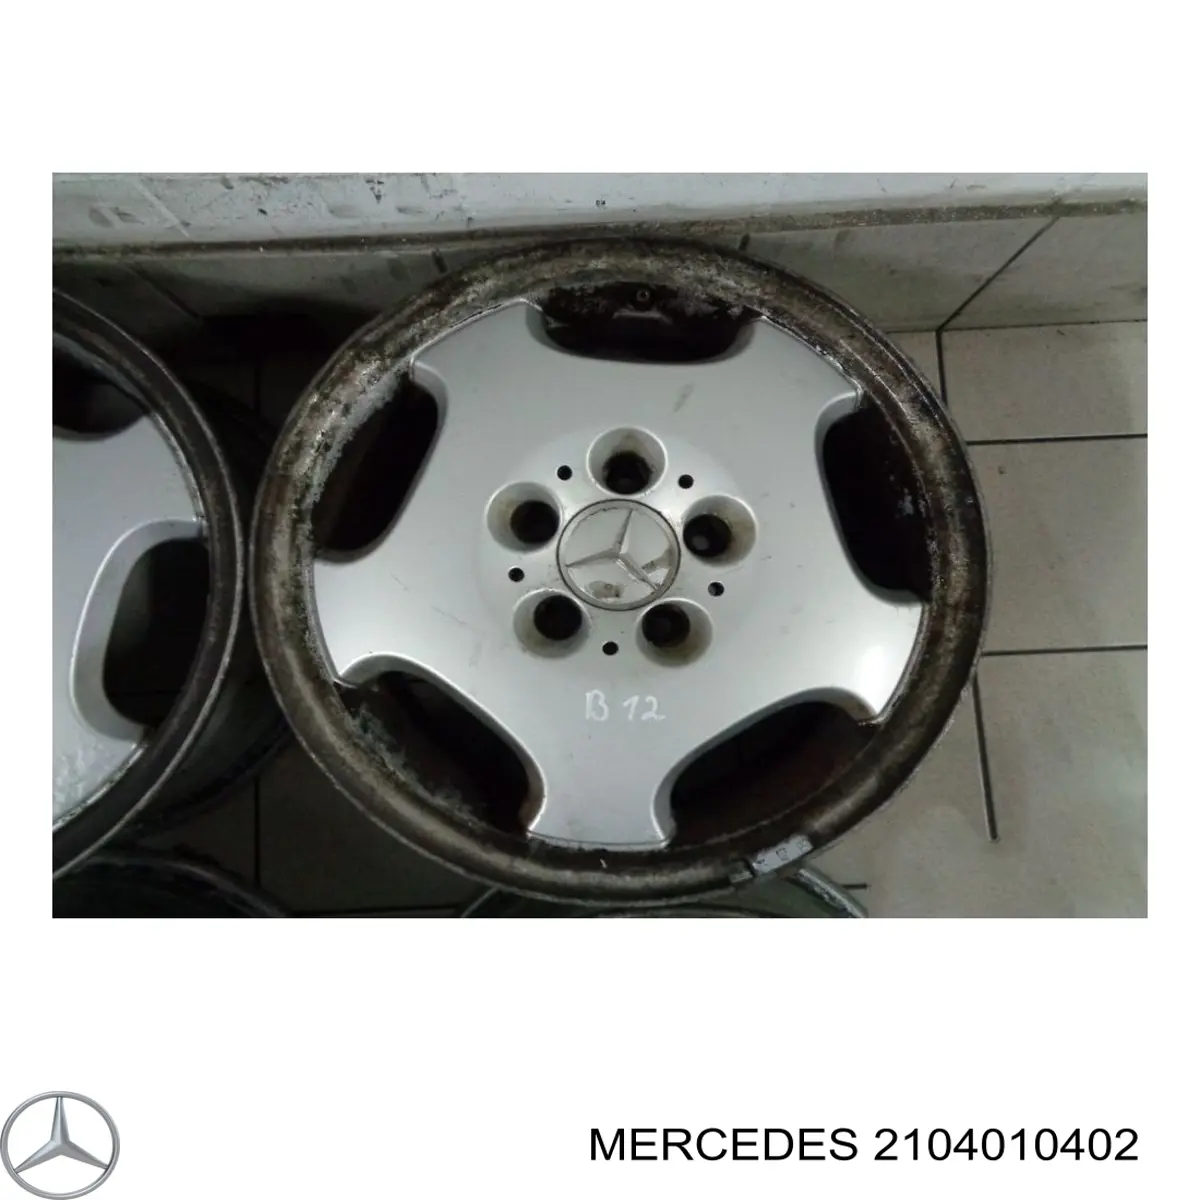 Discos de roda de aleação ligeira (de aleação ligeira, de titânio) para Mercedes E (S210)